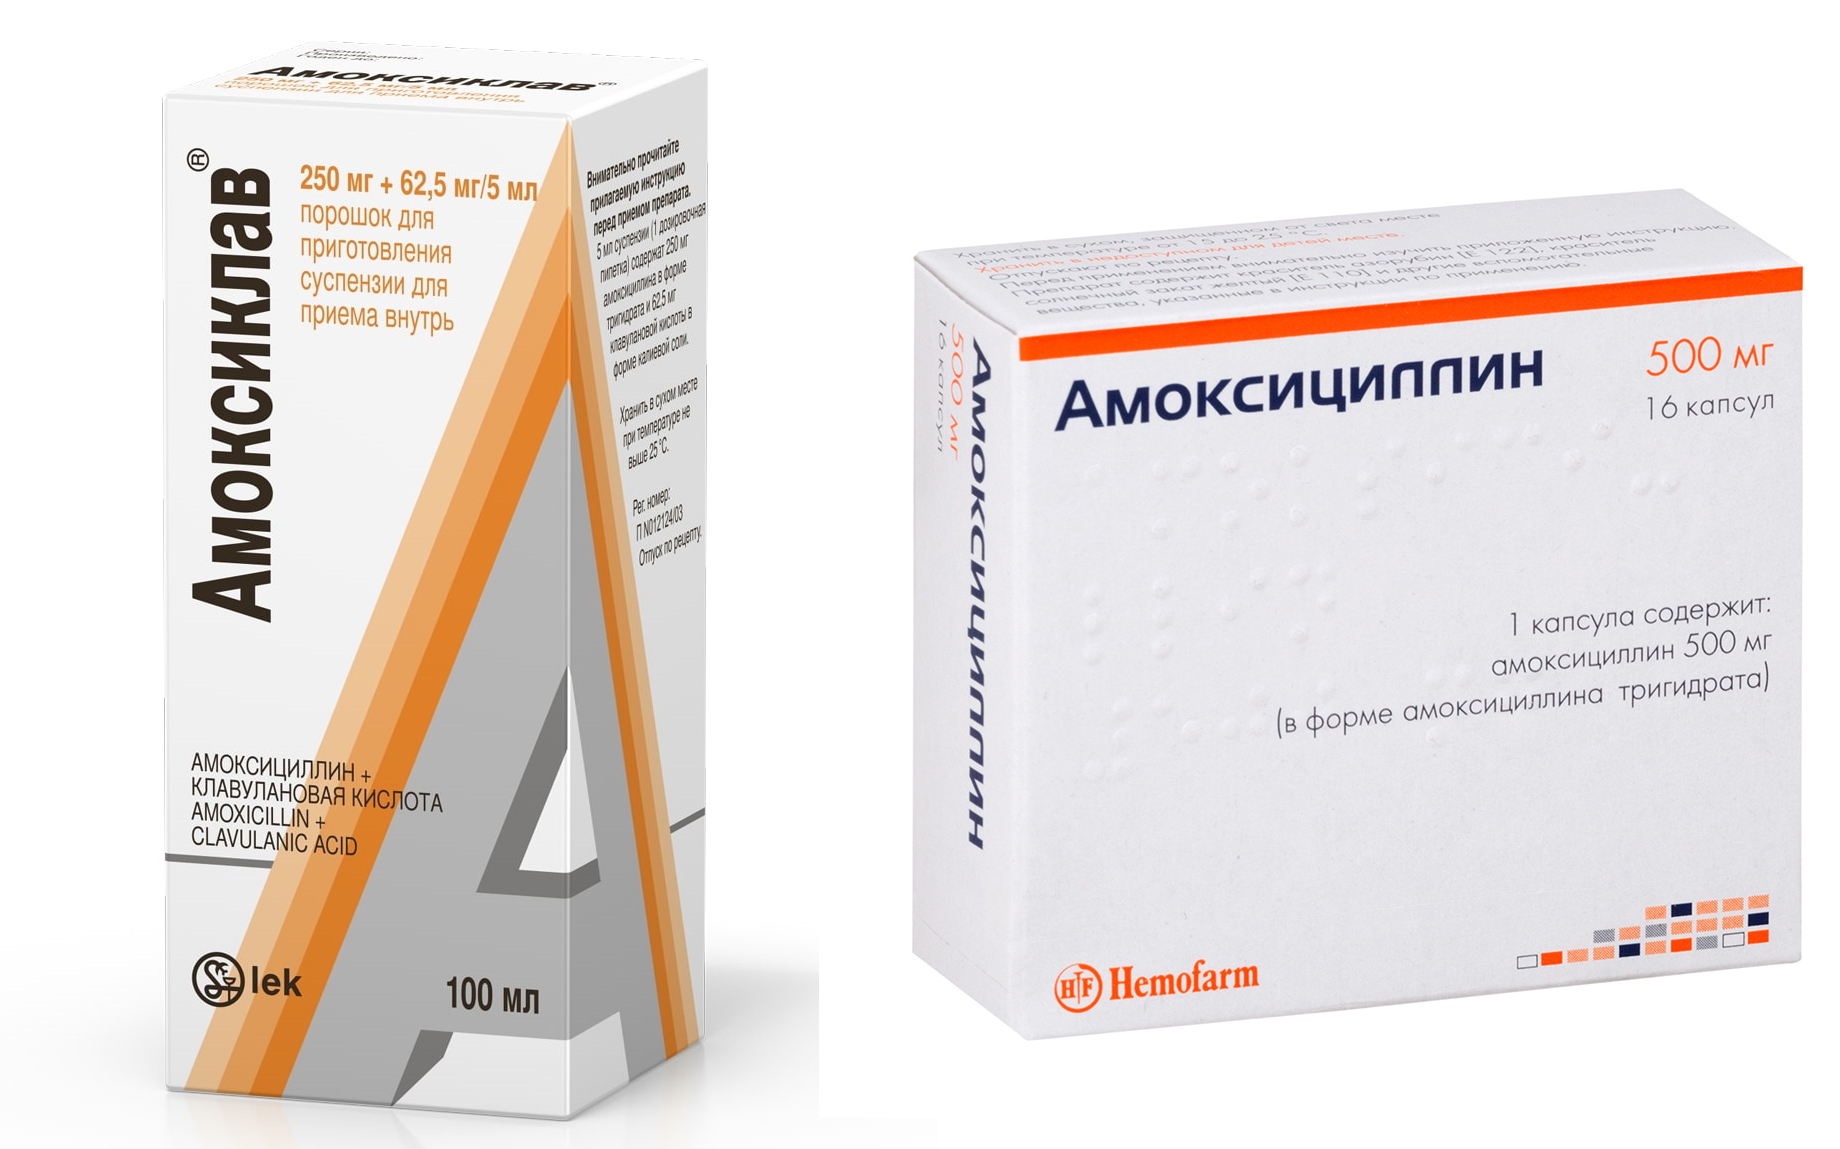 Amoxicilina cansancio